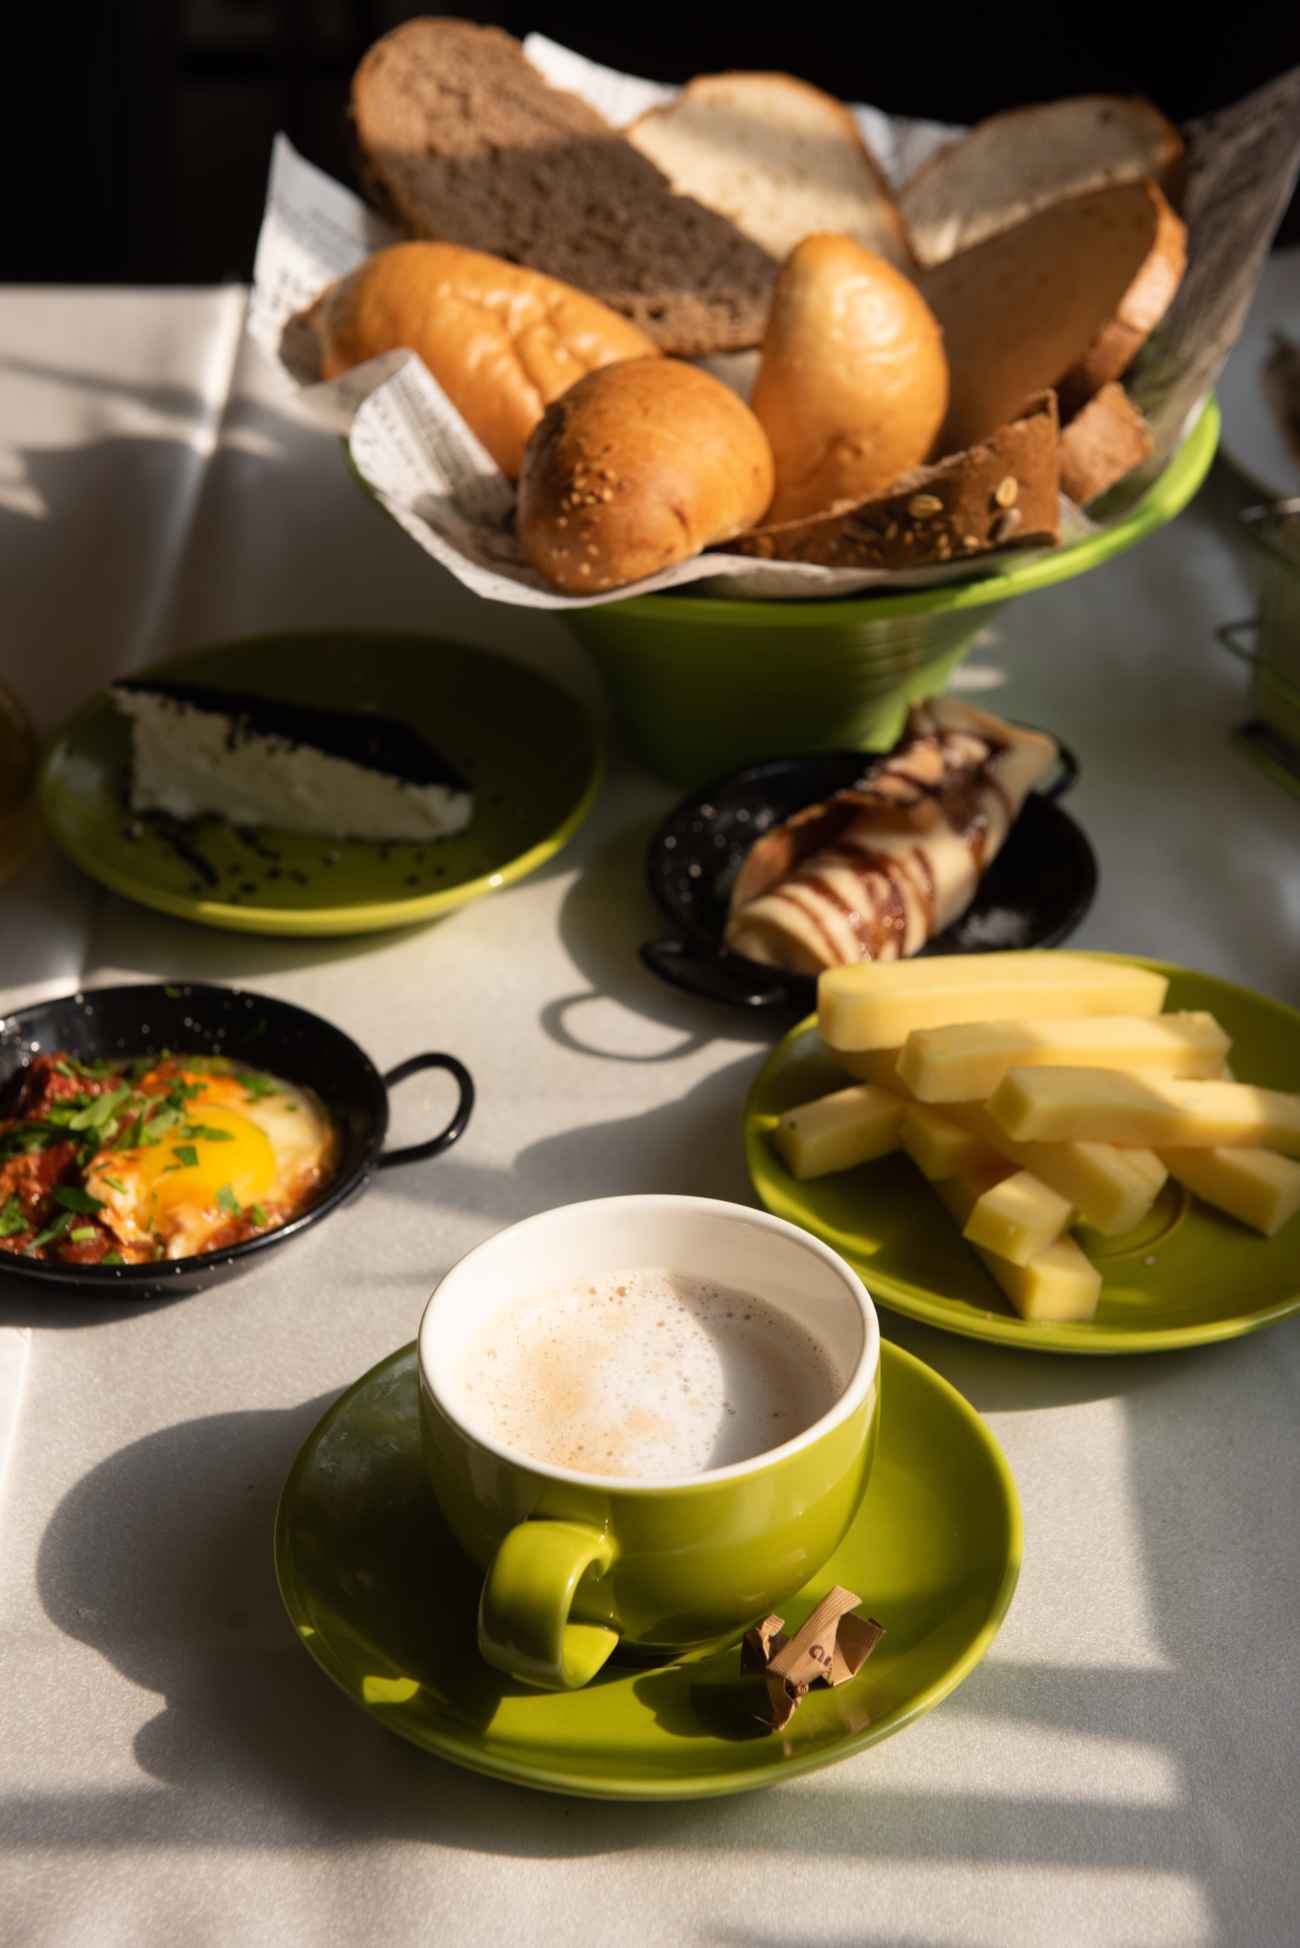 הגשת ארוחת בוקר במלון אסטוריה בטבריה